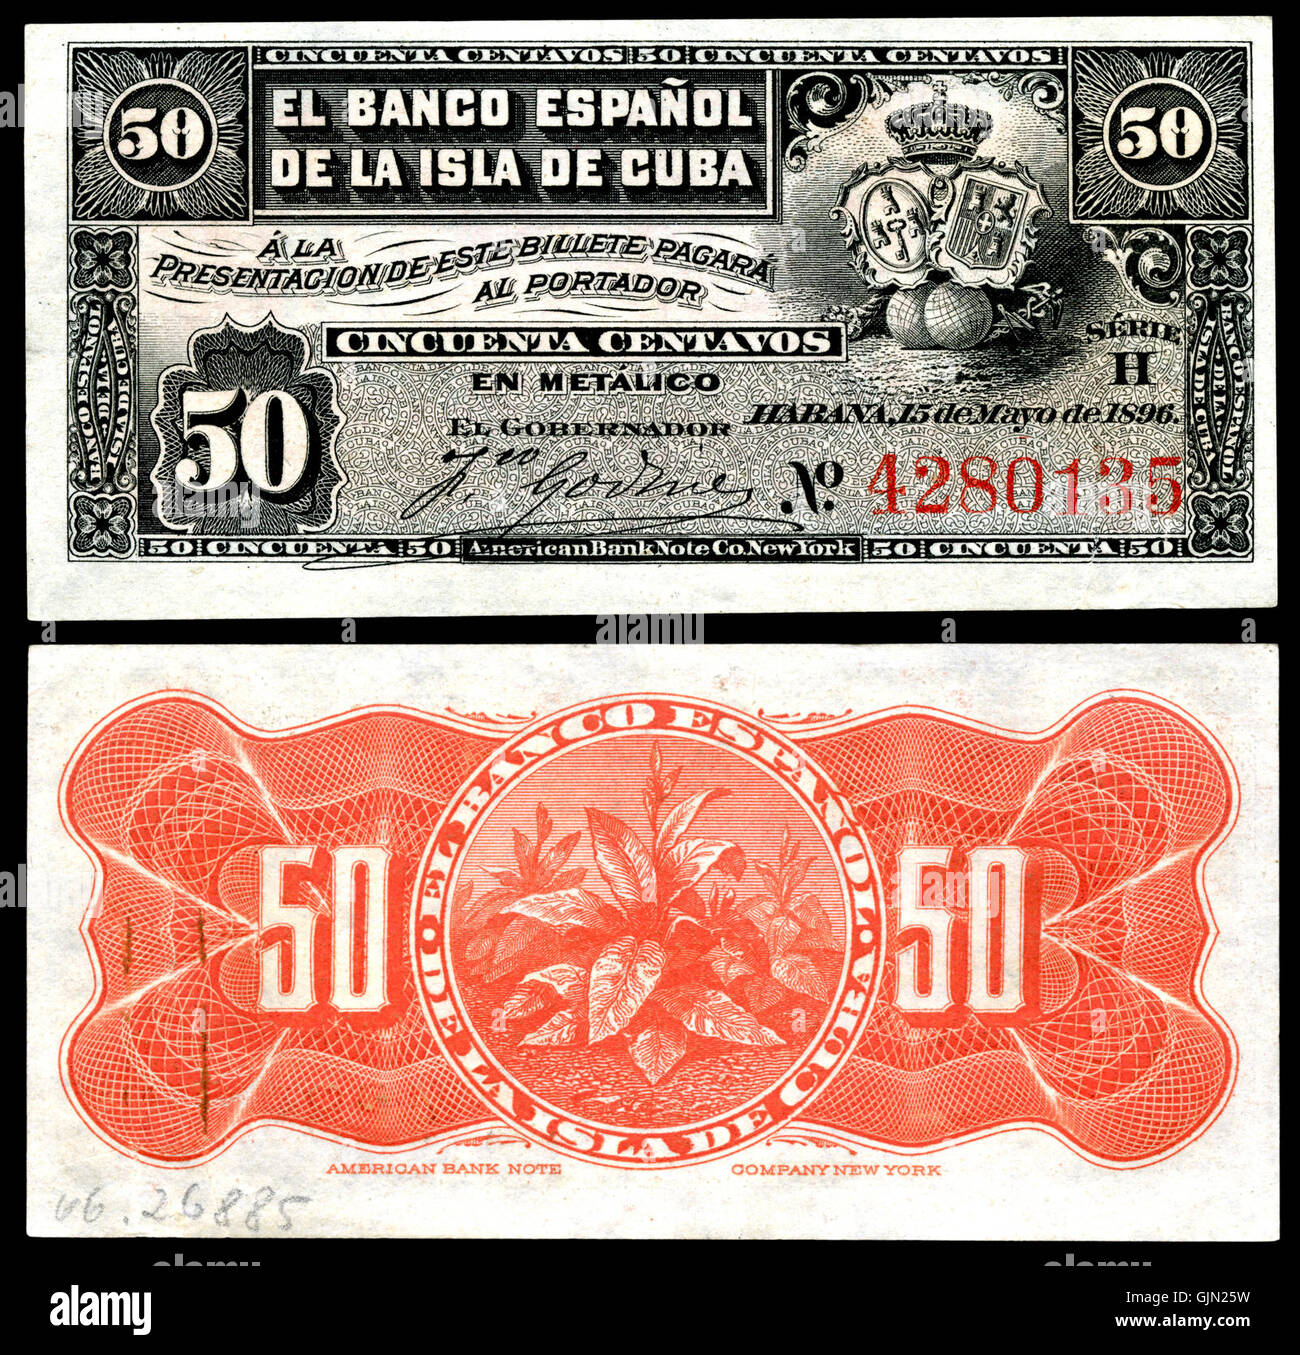 CUB 46a El Banco Espanol De La Isla de Cuba 50 Centavos (1896) Stockfoto